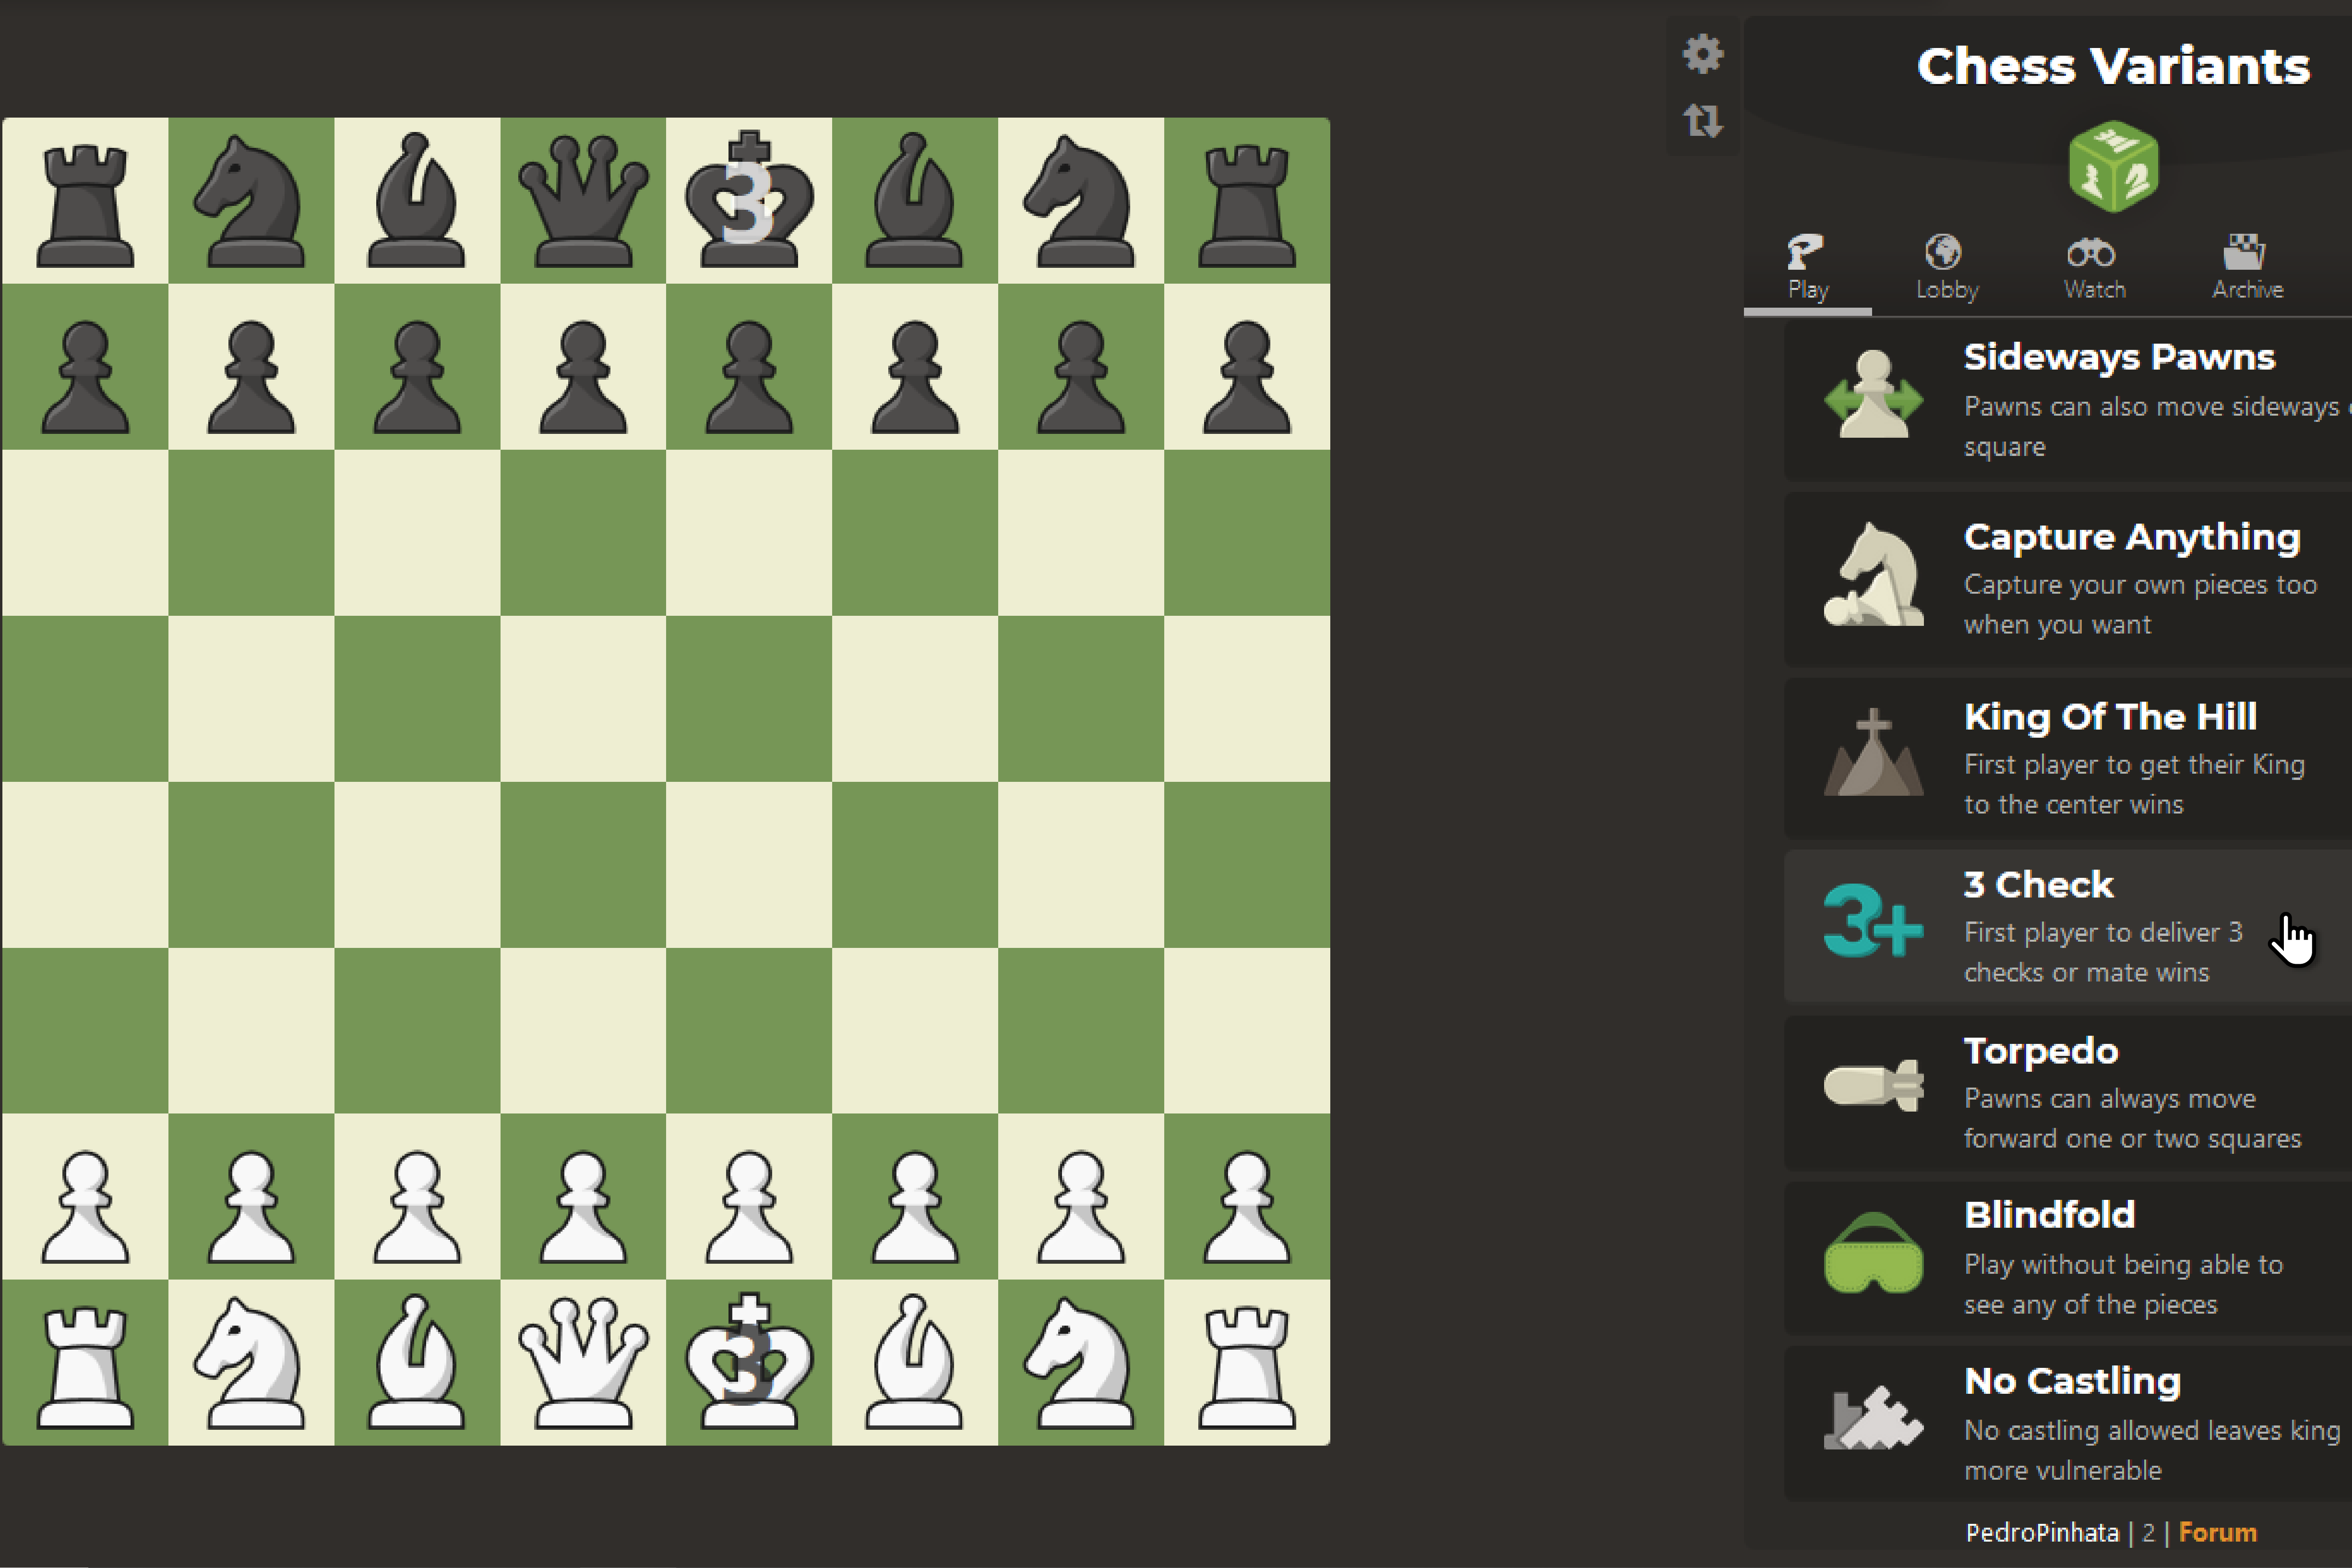 Three-Check Chess